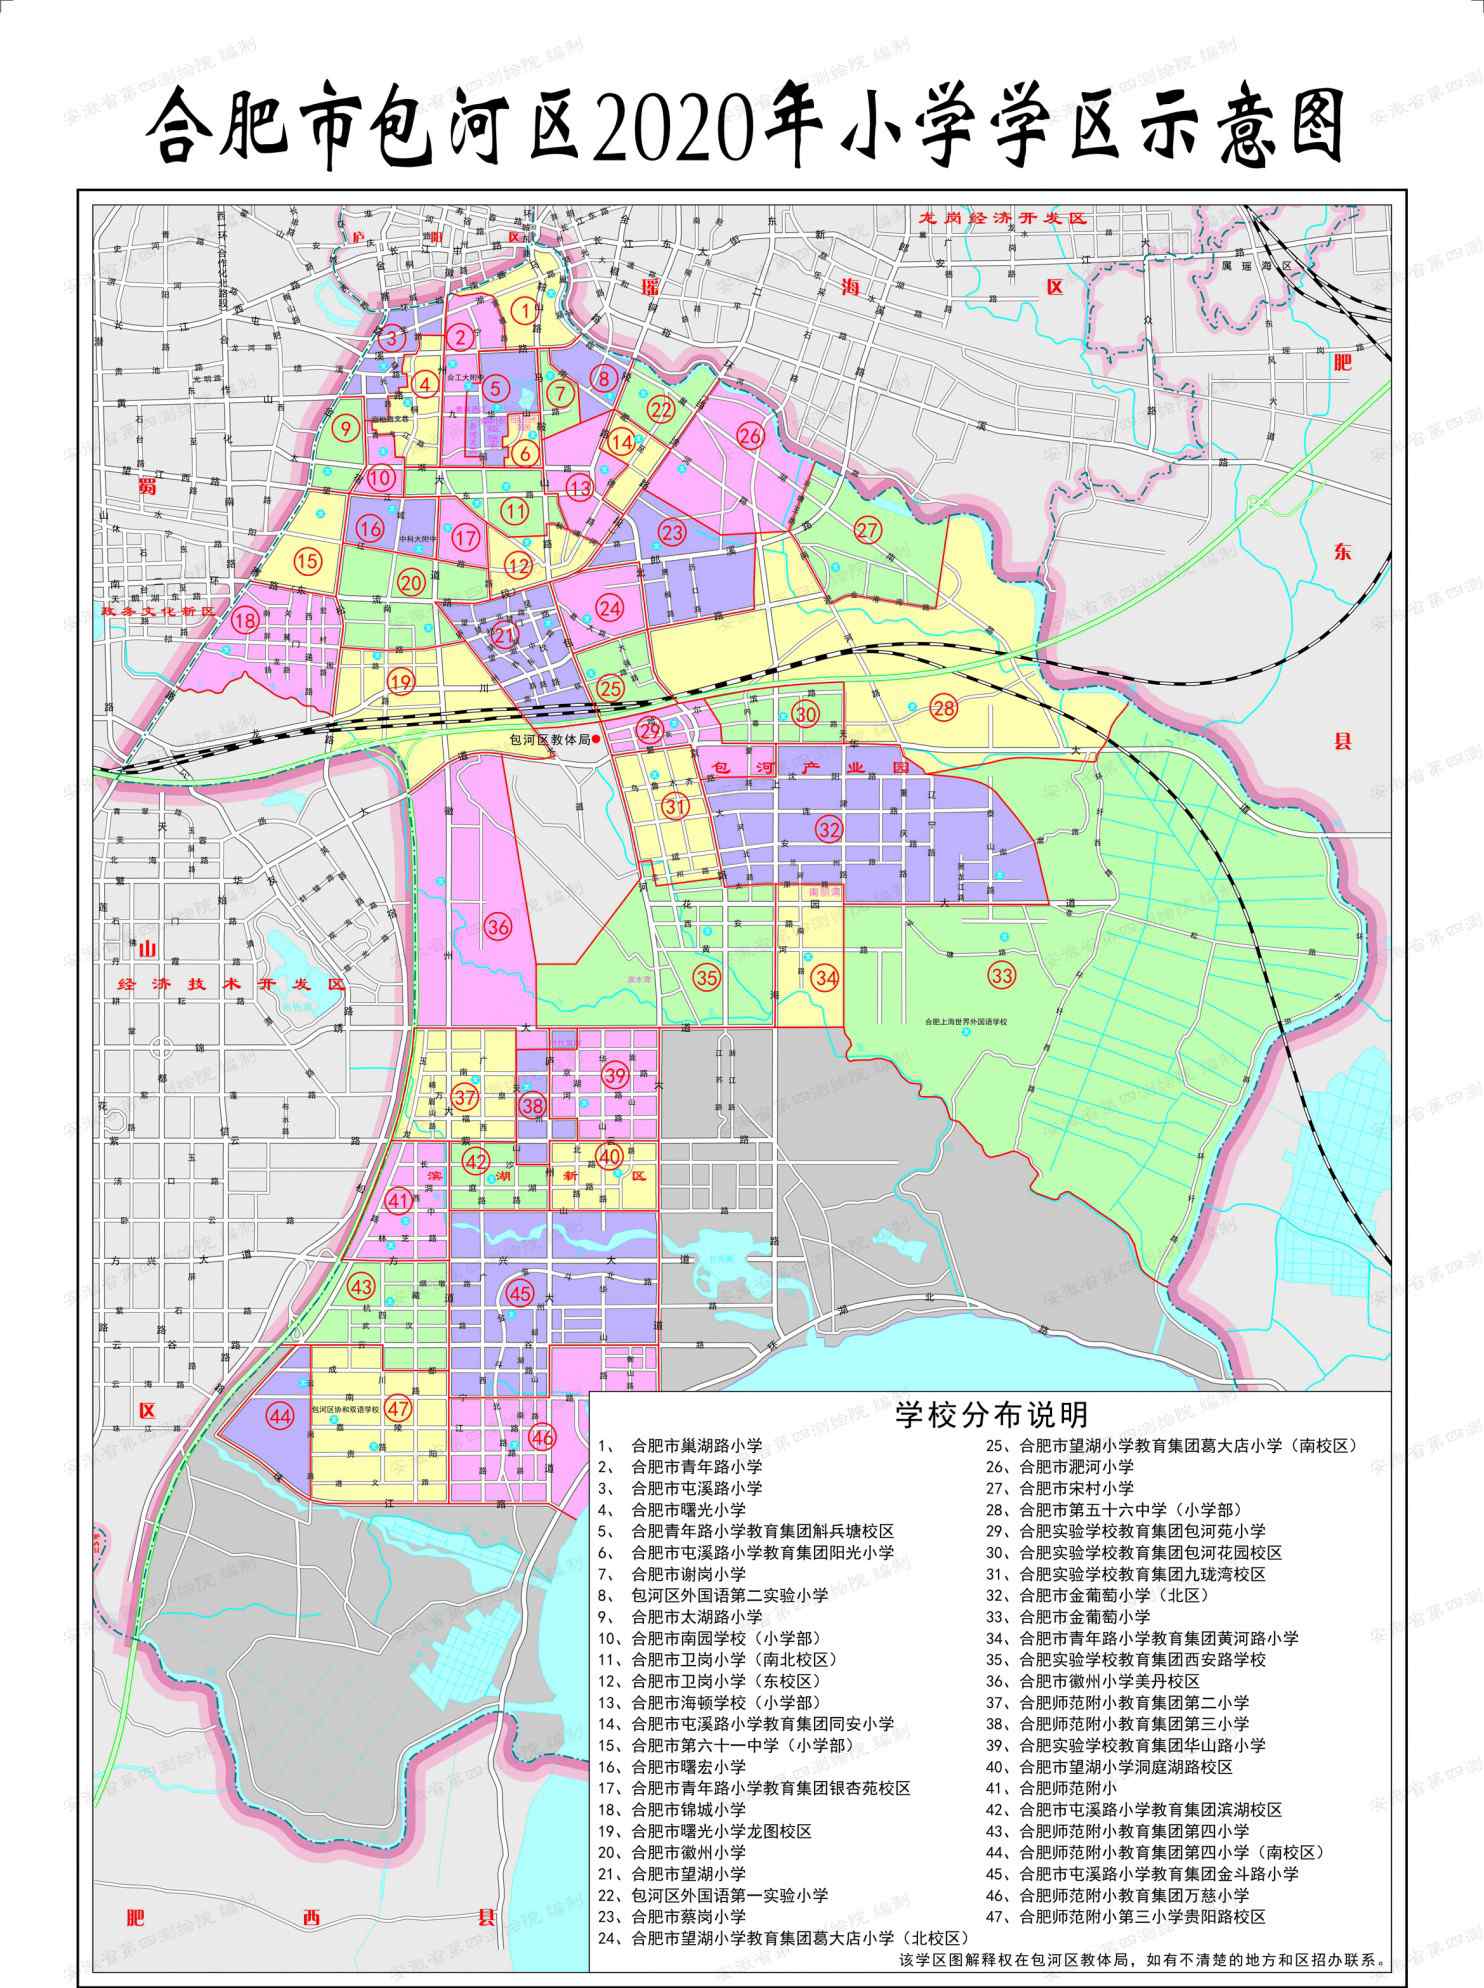 合肥市包河区地图 最新合肥学区划分图公布！2020年合肥市包河区中小学学区划分方案出炉